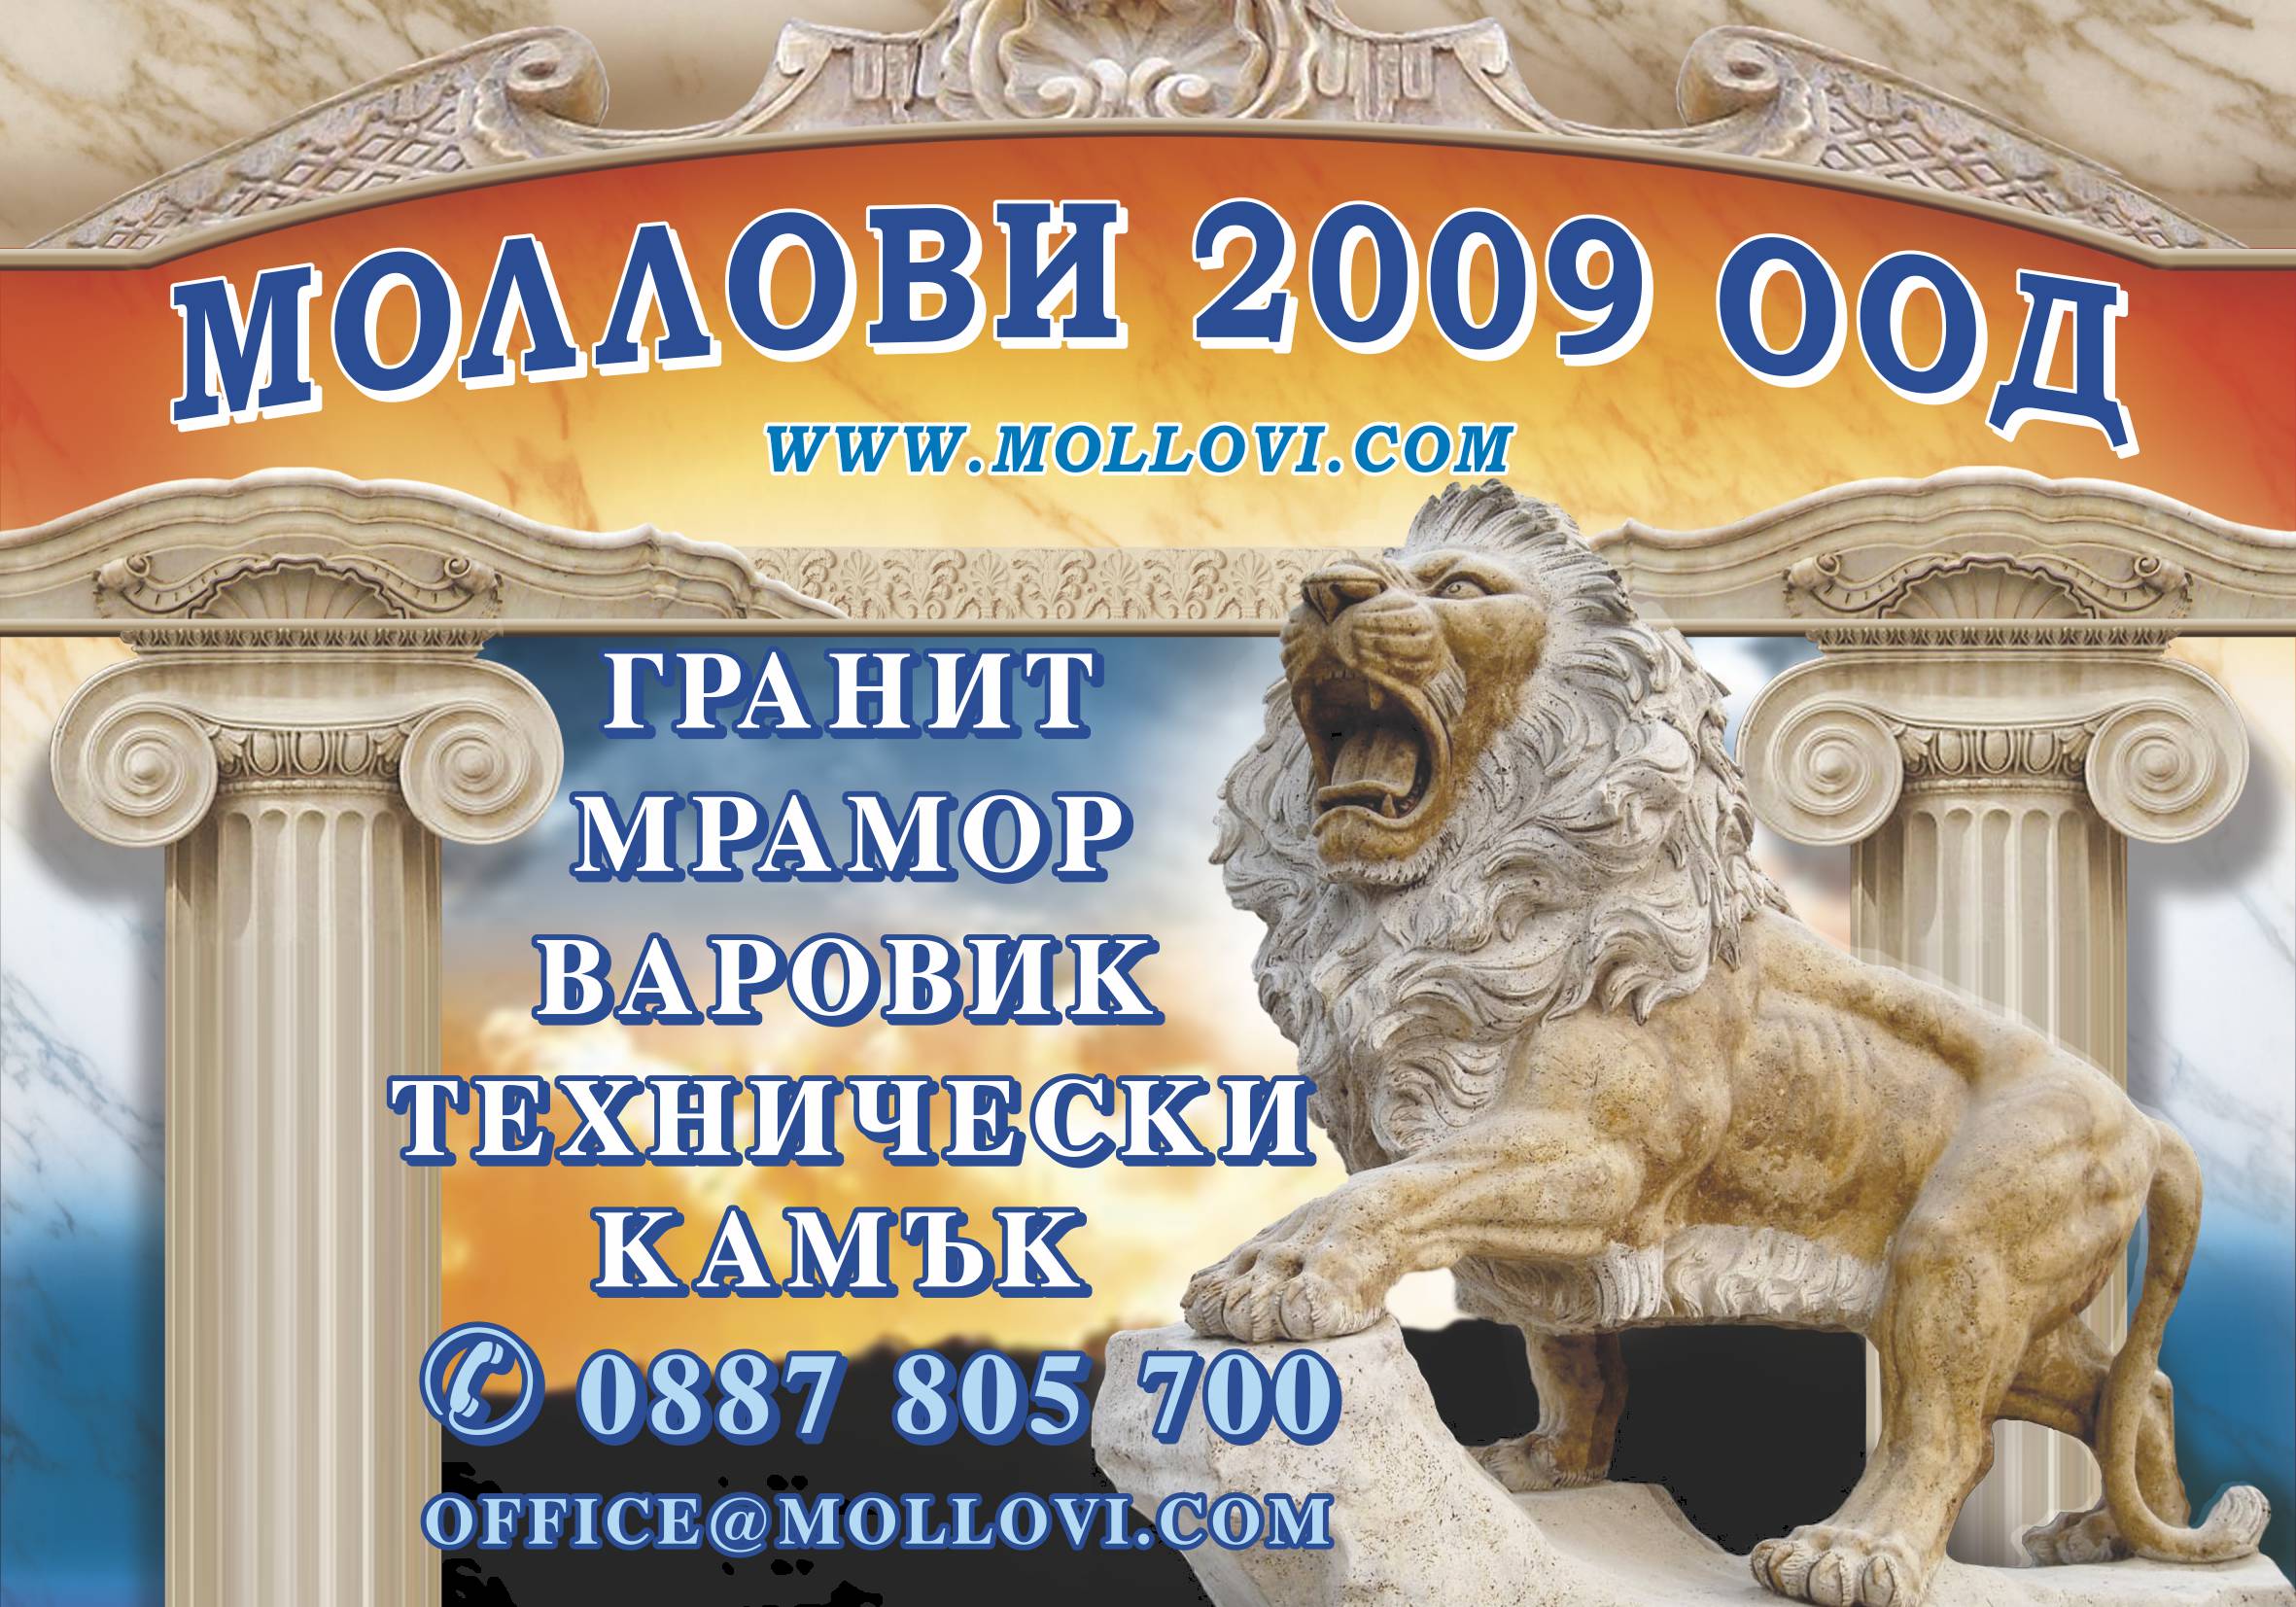 Лого на МОЛЛОВИ - 2009 ООД